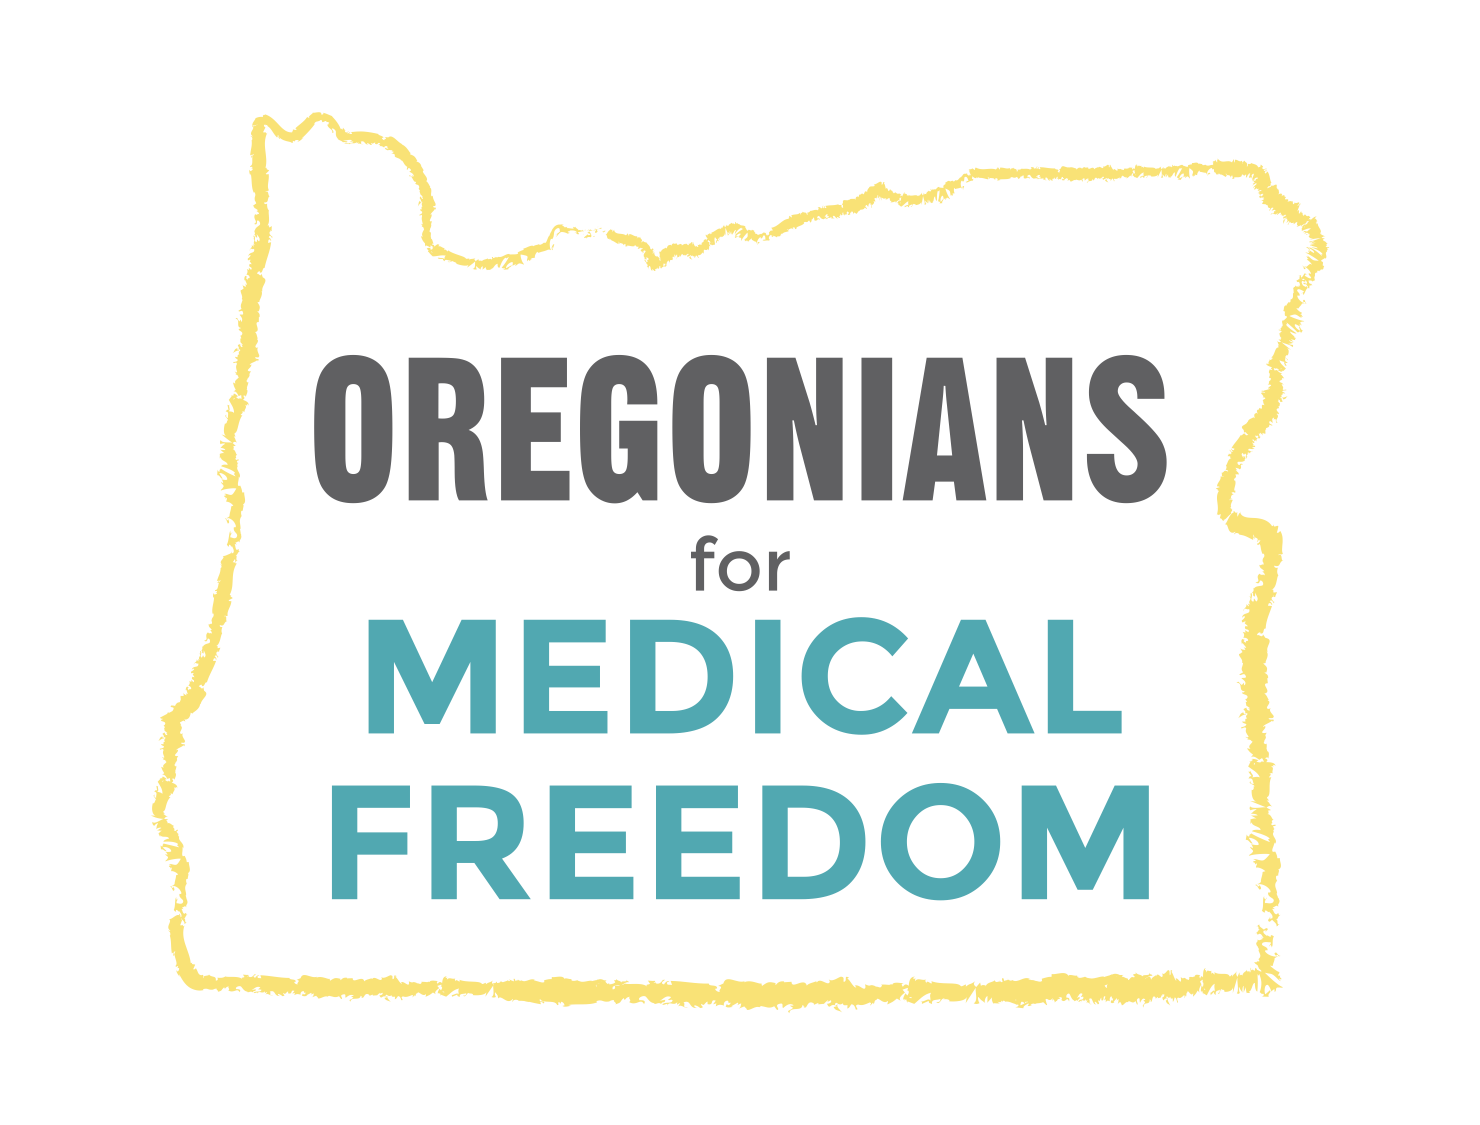 Oregonians for Medical Freedom